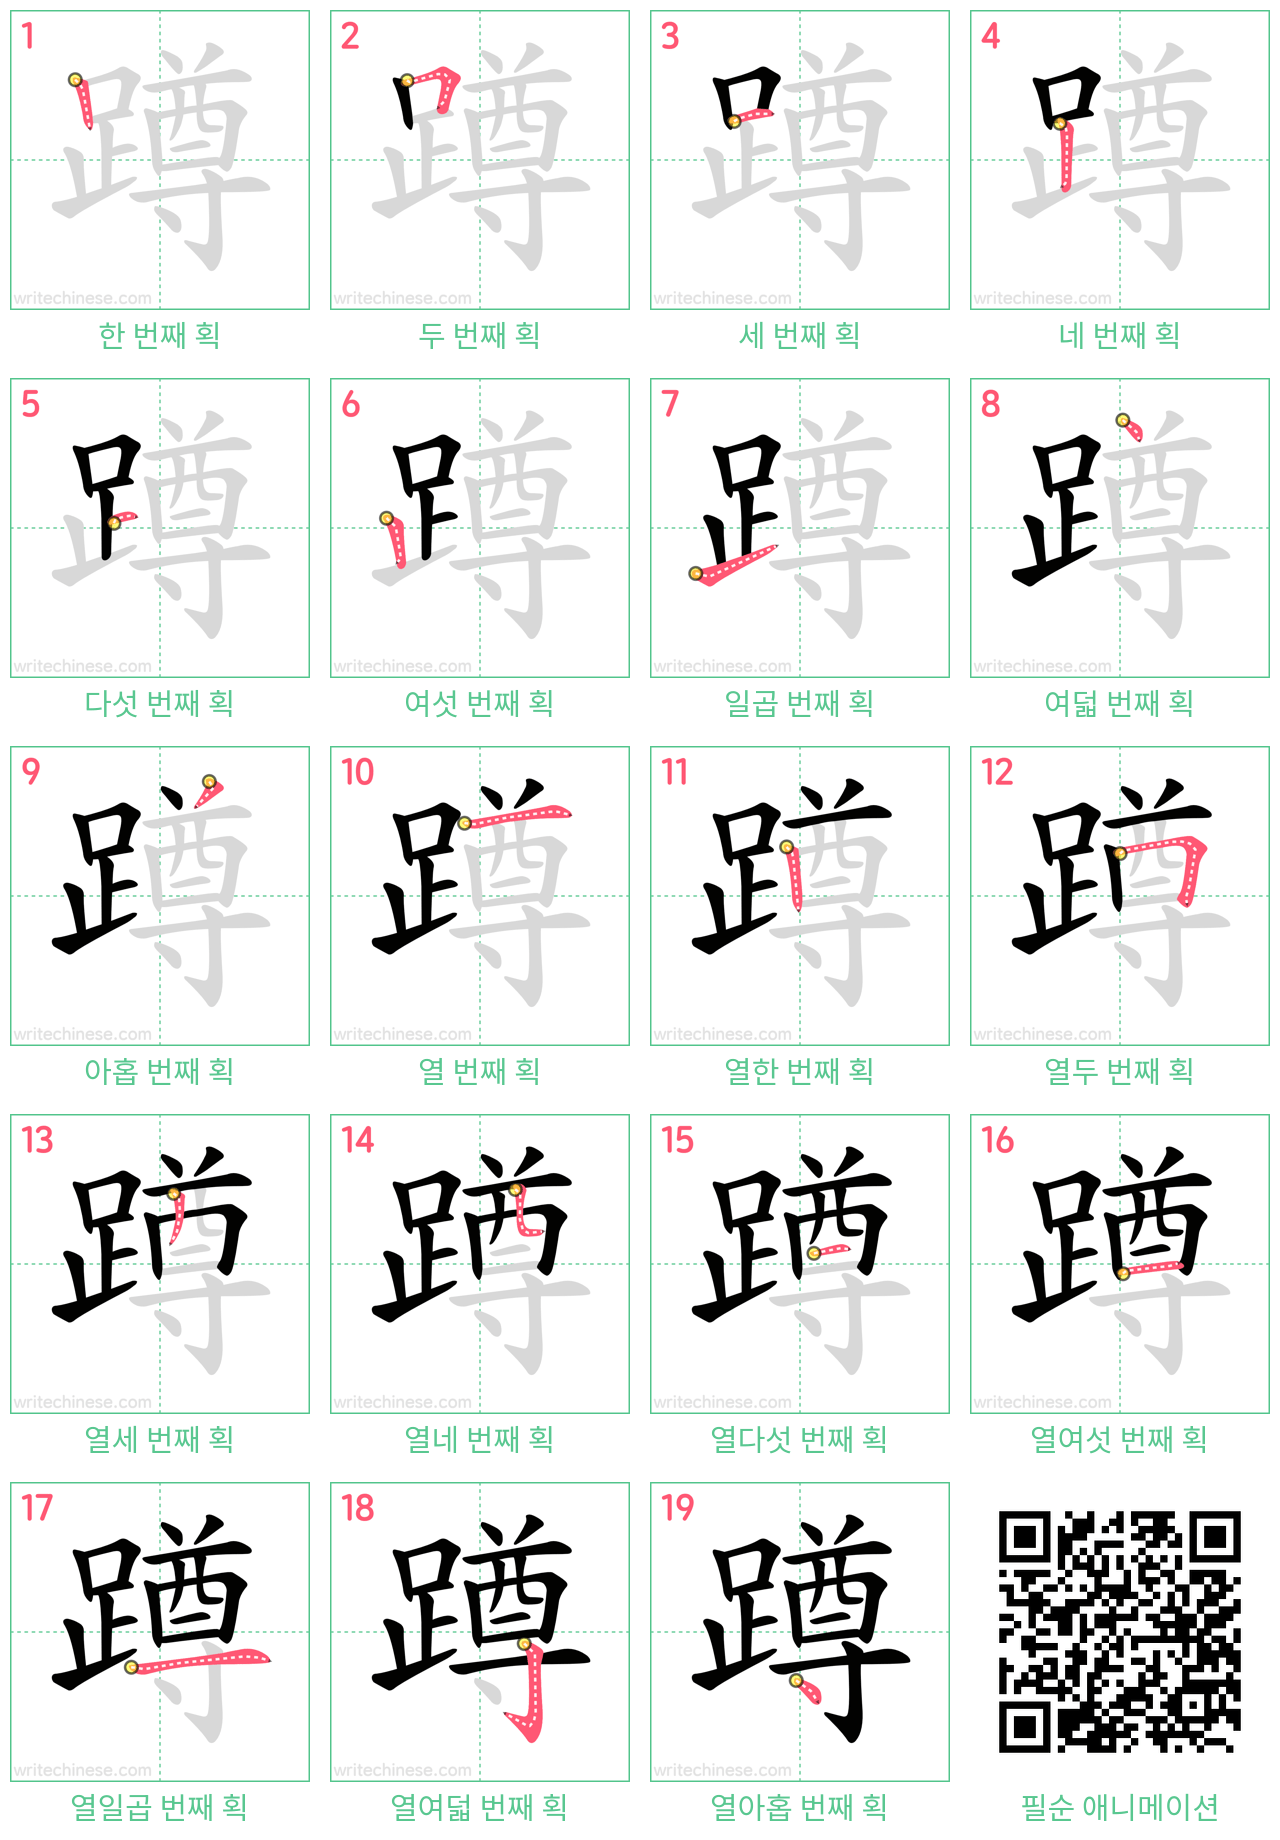 蹲 step-by-step stroke order diagrams